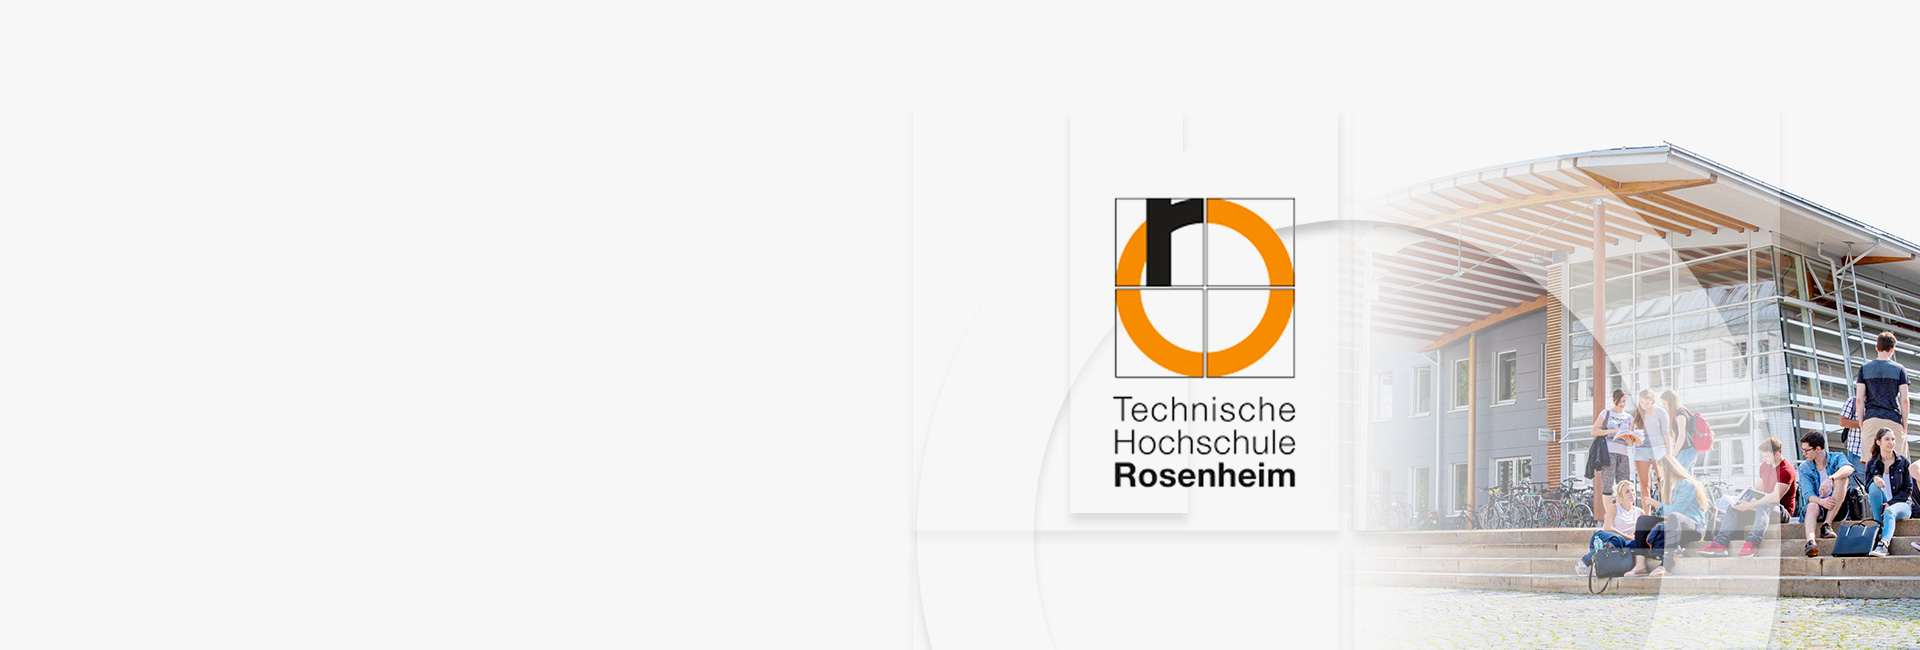 Projektreferenz Technische Hochschule Rosenheim